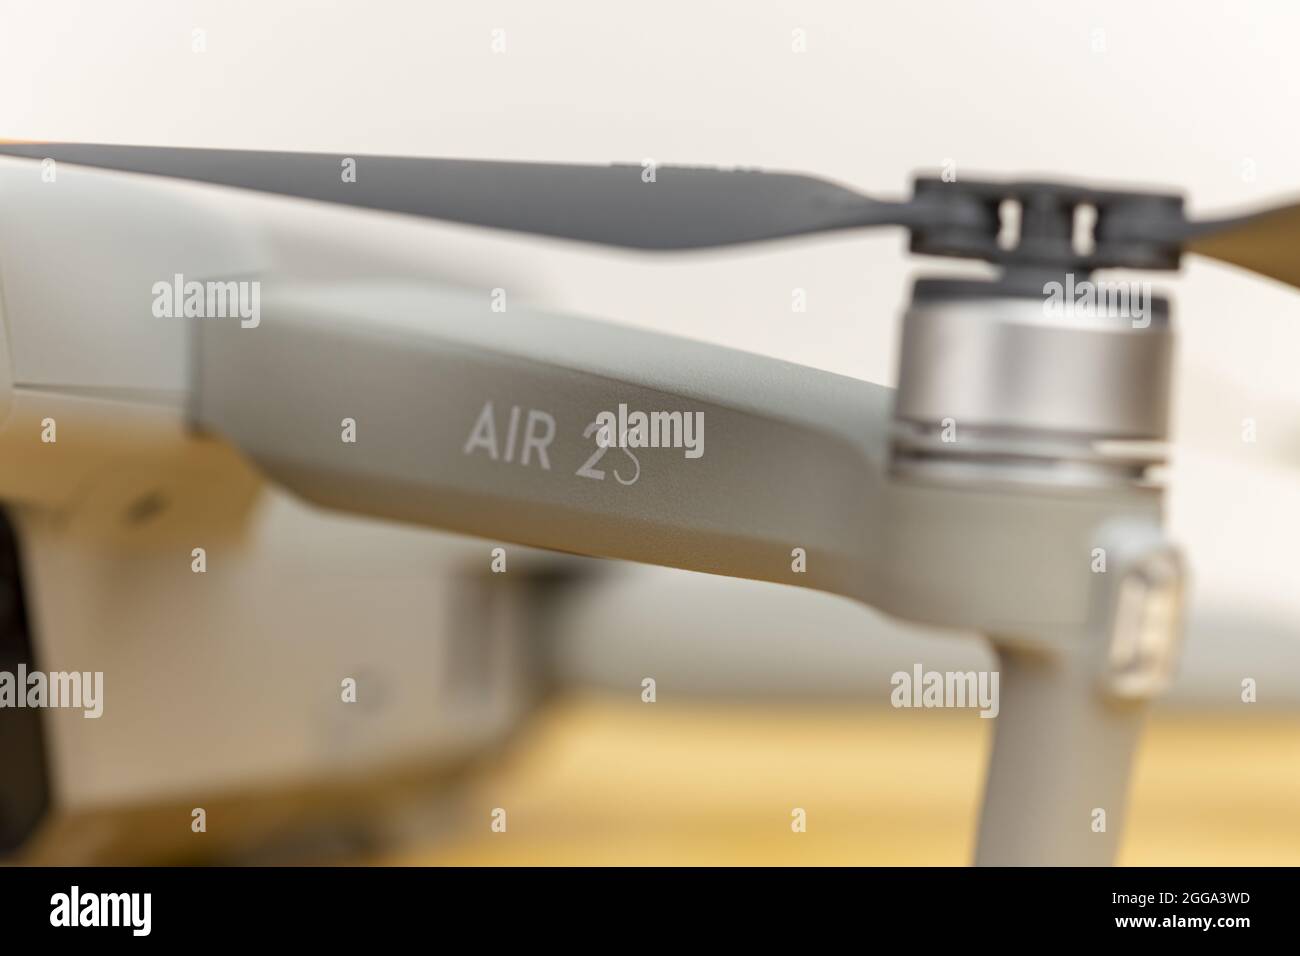 ZUTPHEN, NIEDERLANDE - 06. Aug 2021: Einer der Propellerarme der Air 2S Quadcopter Drohne mit eingravierter DJI- und Namenslogo. Stockfoto